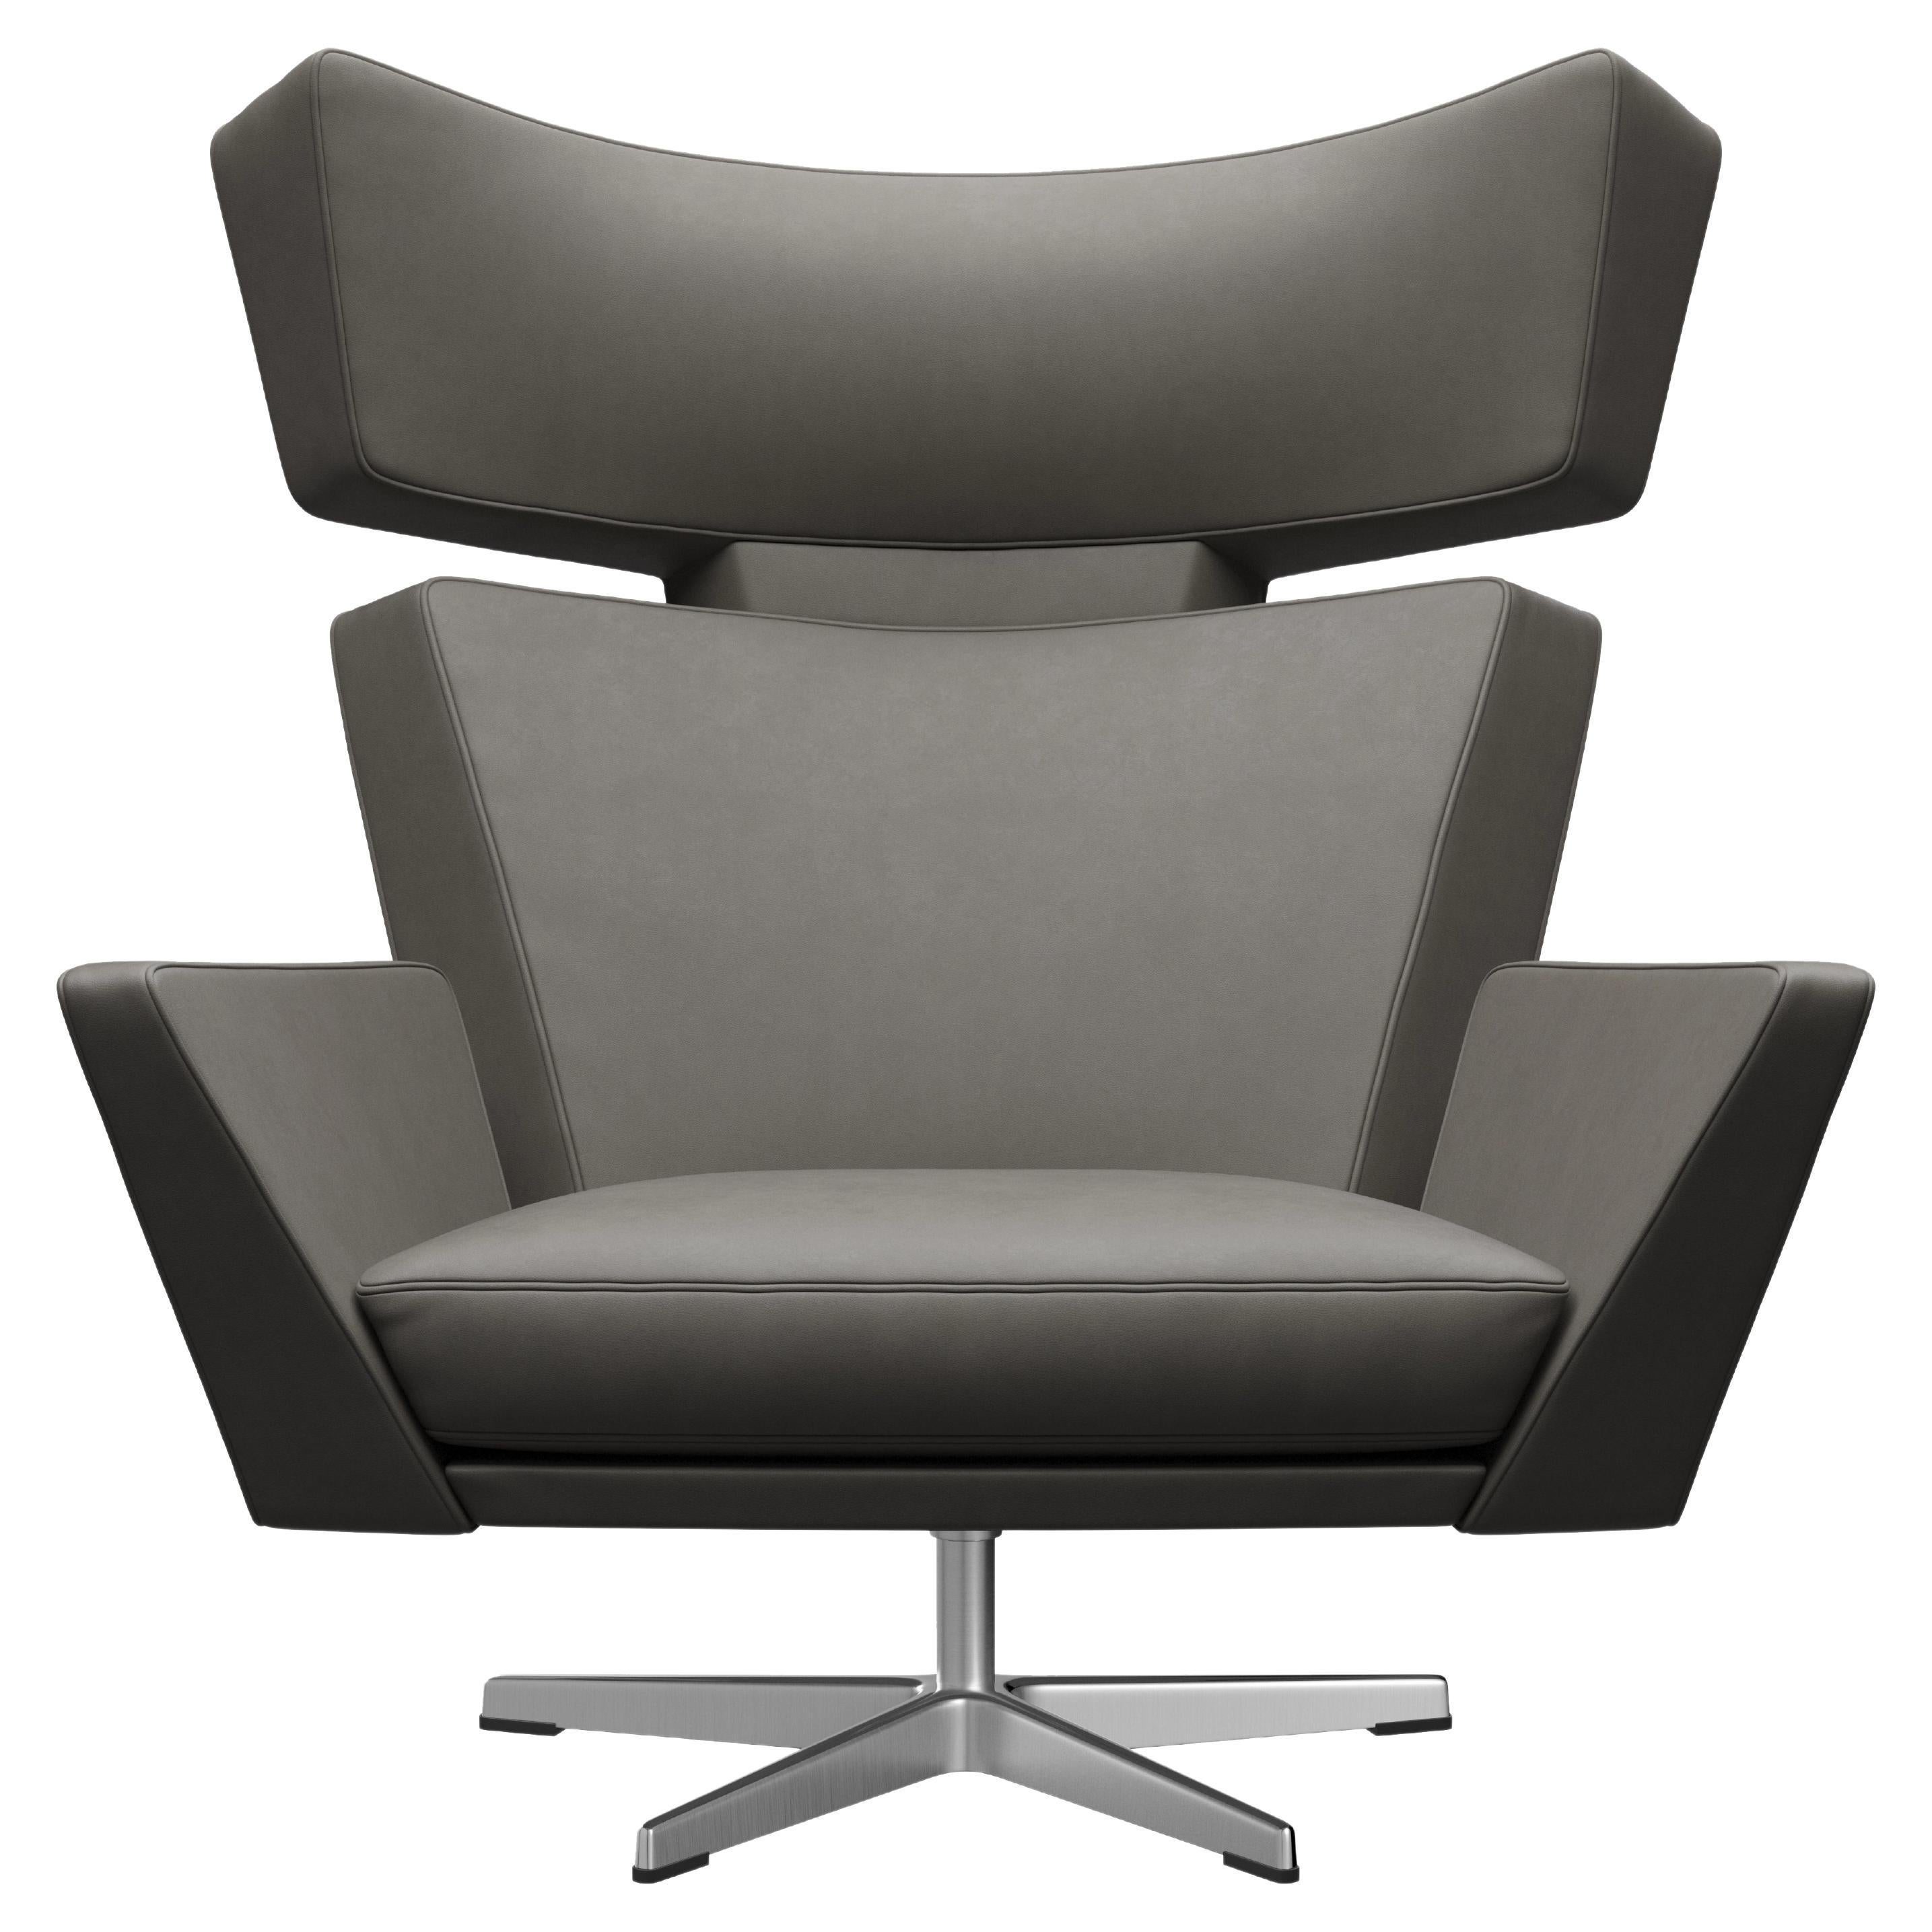 Arne Jacobsen 'Oksen' Stuhl für Fritz Hansen, Stuhl mit Essential-Lederpolsterung